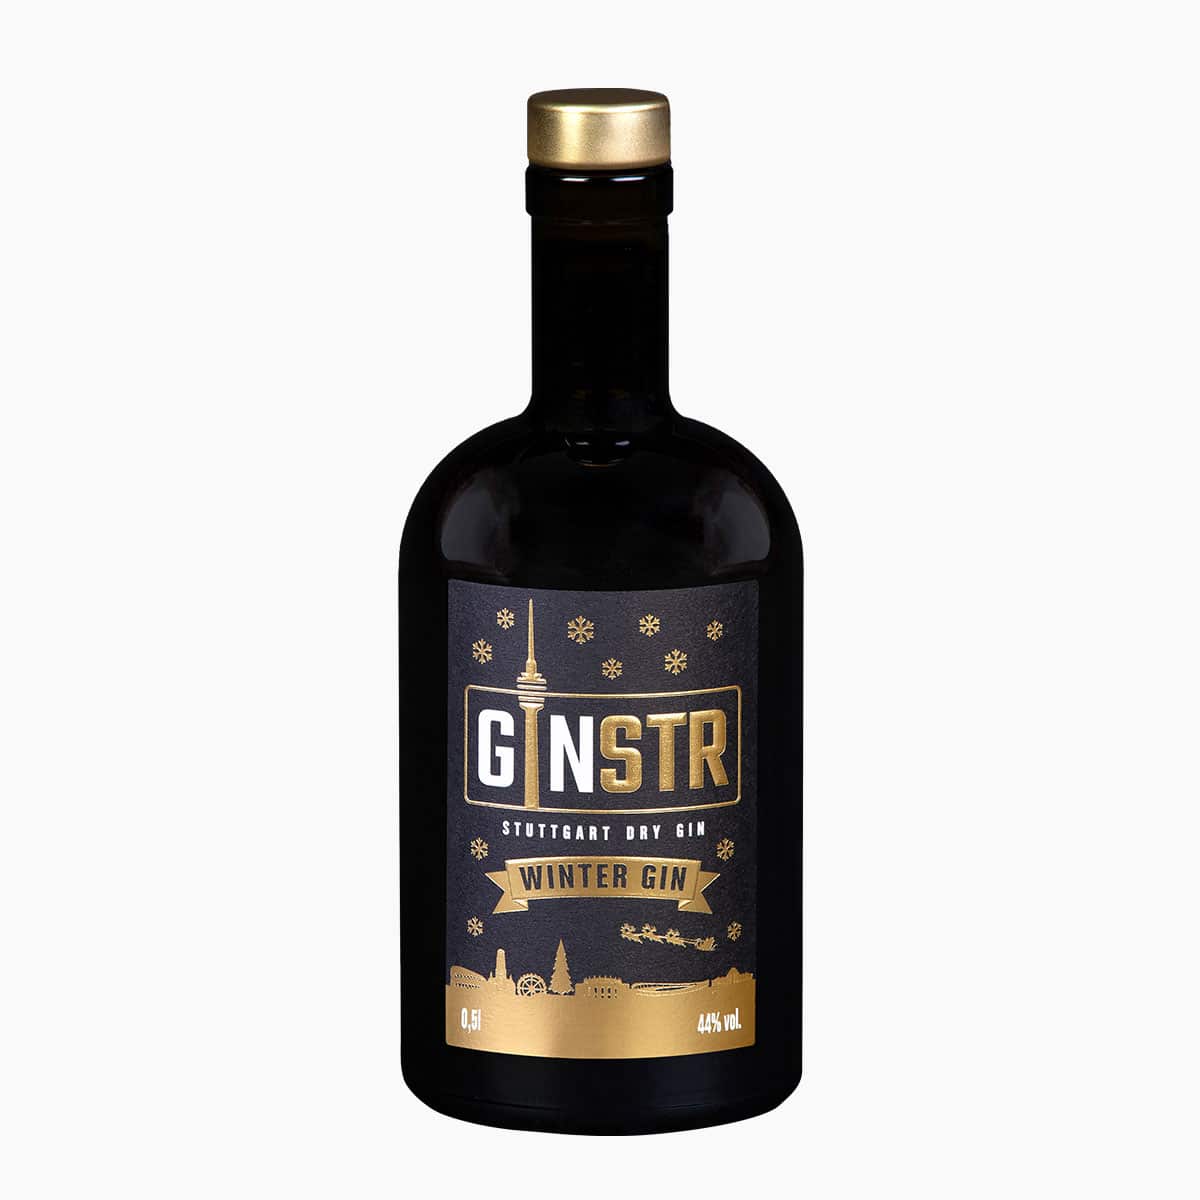 GINSTR - Winter Gin - Den perfekte gin til vinterhalvåret